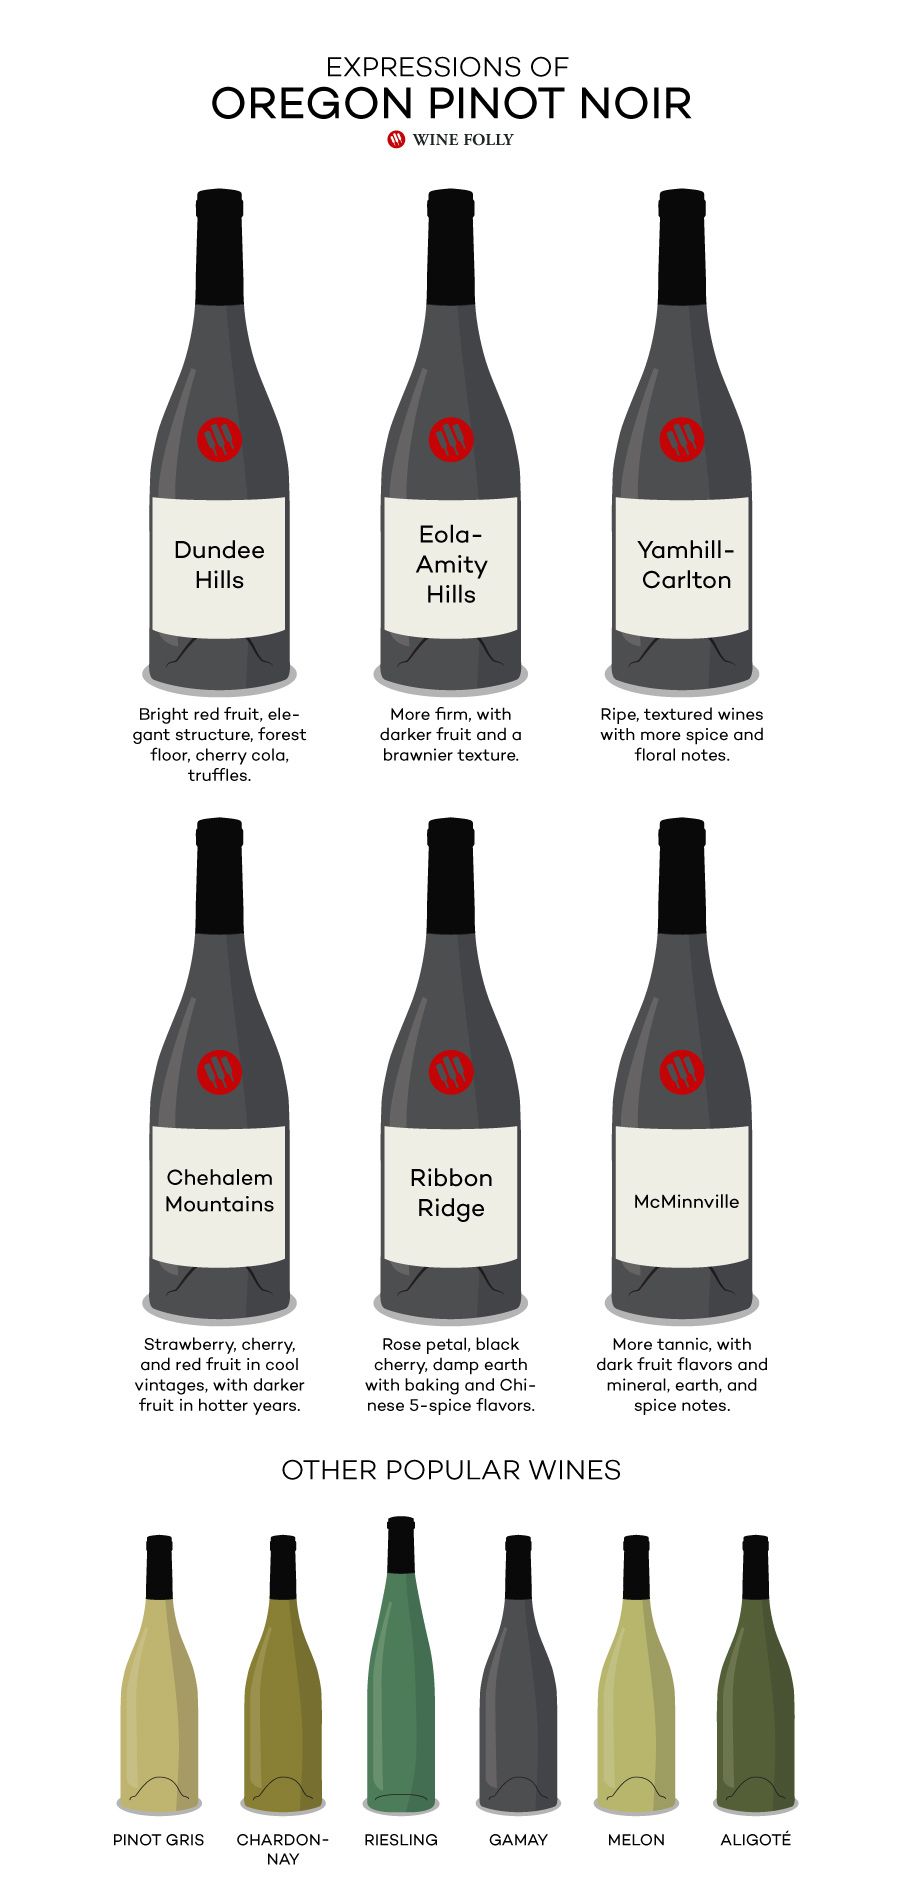 Štýly Oregon Pinot Noir založené na podoblasti - Dundee Hills, Eola-Amity Hills, Yamhill-Carlton, Ribbon Ridge, pohorie Chehalem a McMinnville - podľa Wine Folly